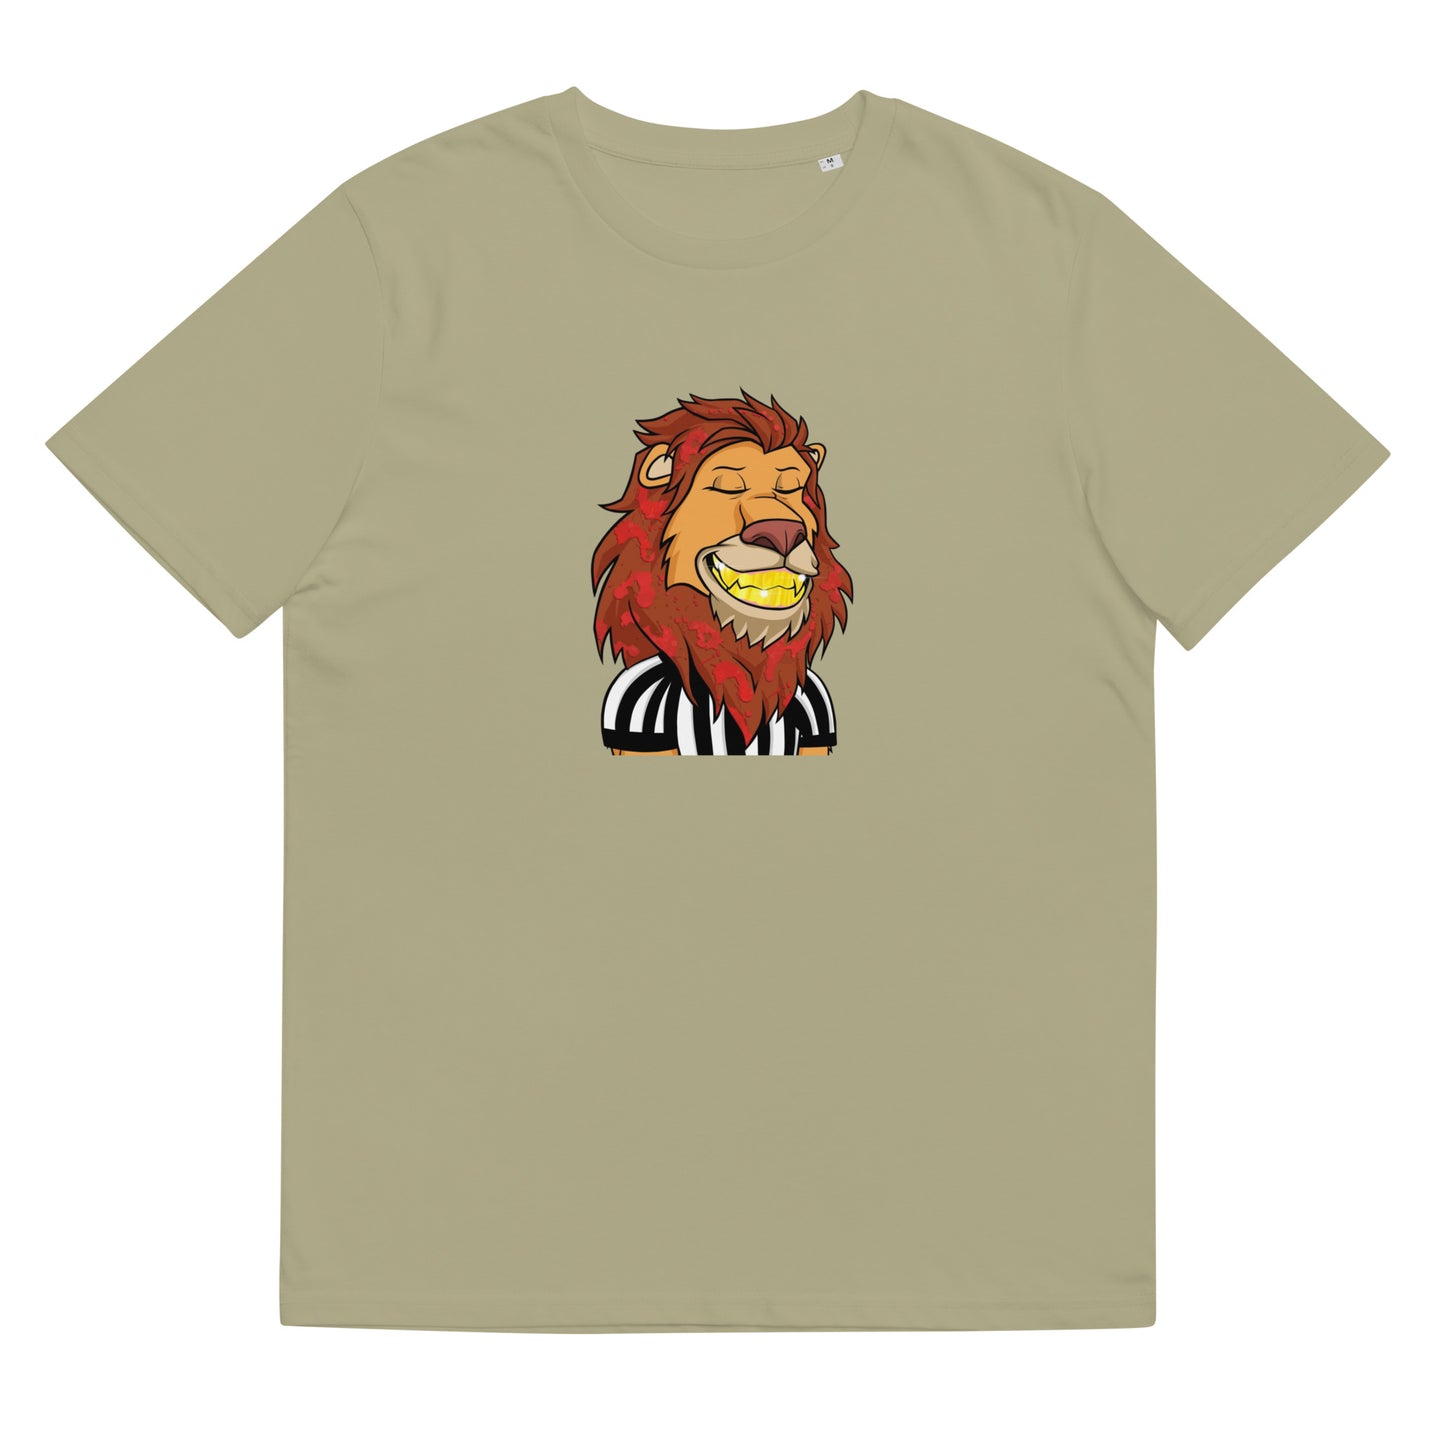 Unisex organic cotton t-shirt feat Lazy Lion #1840